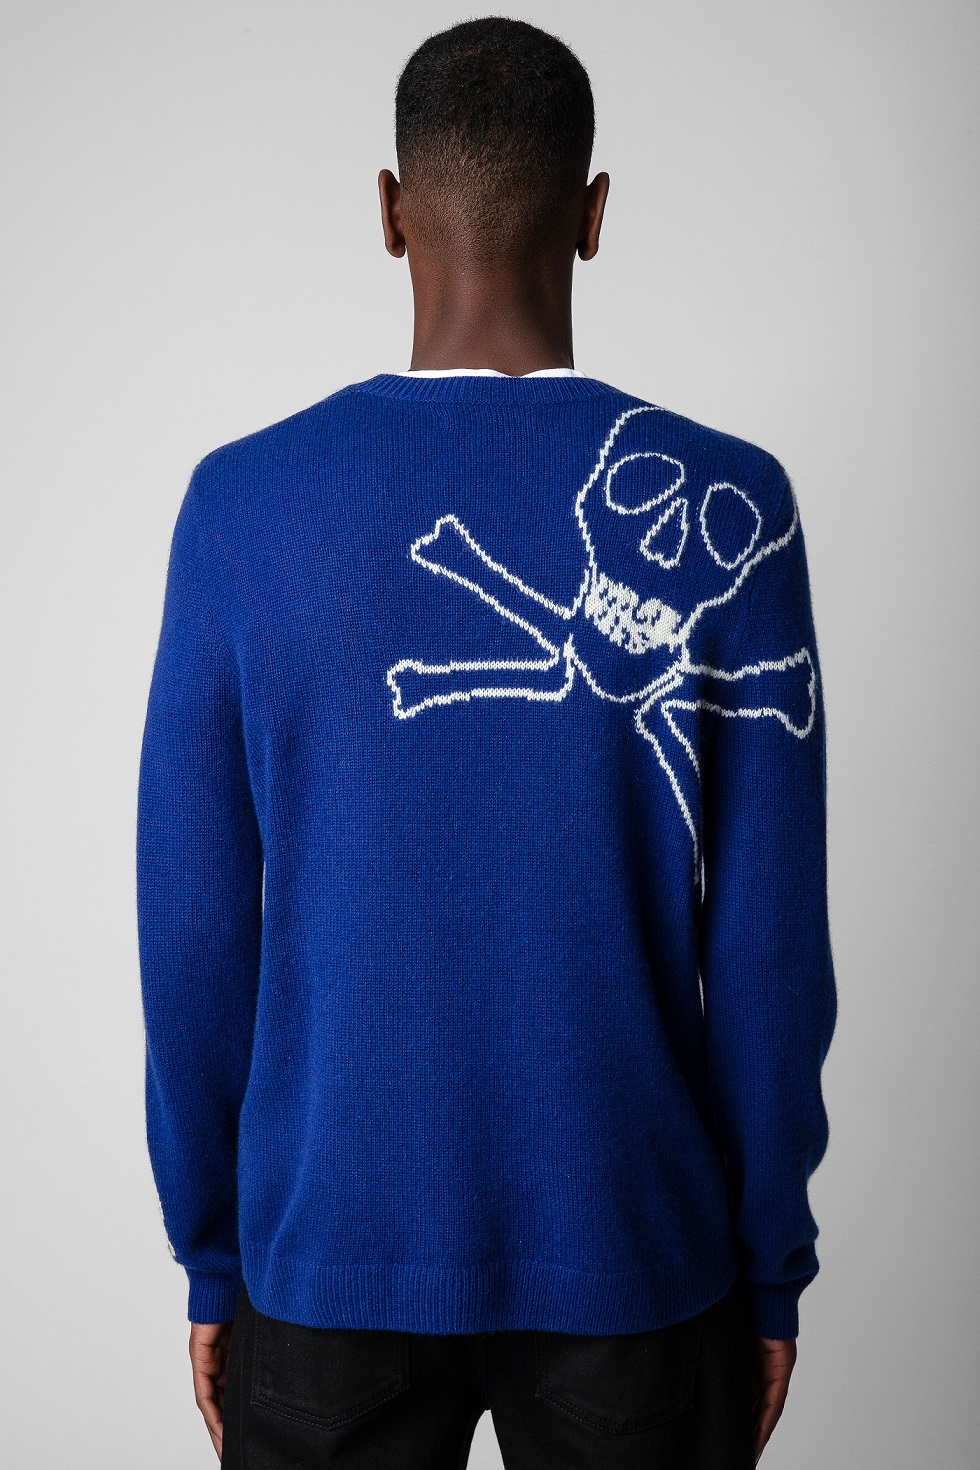 Kennedy Skull Sweater